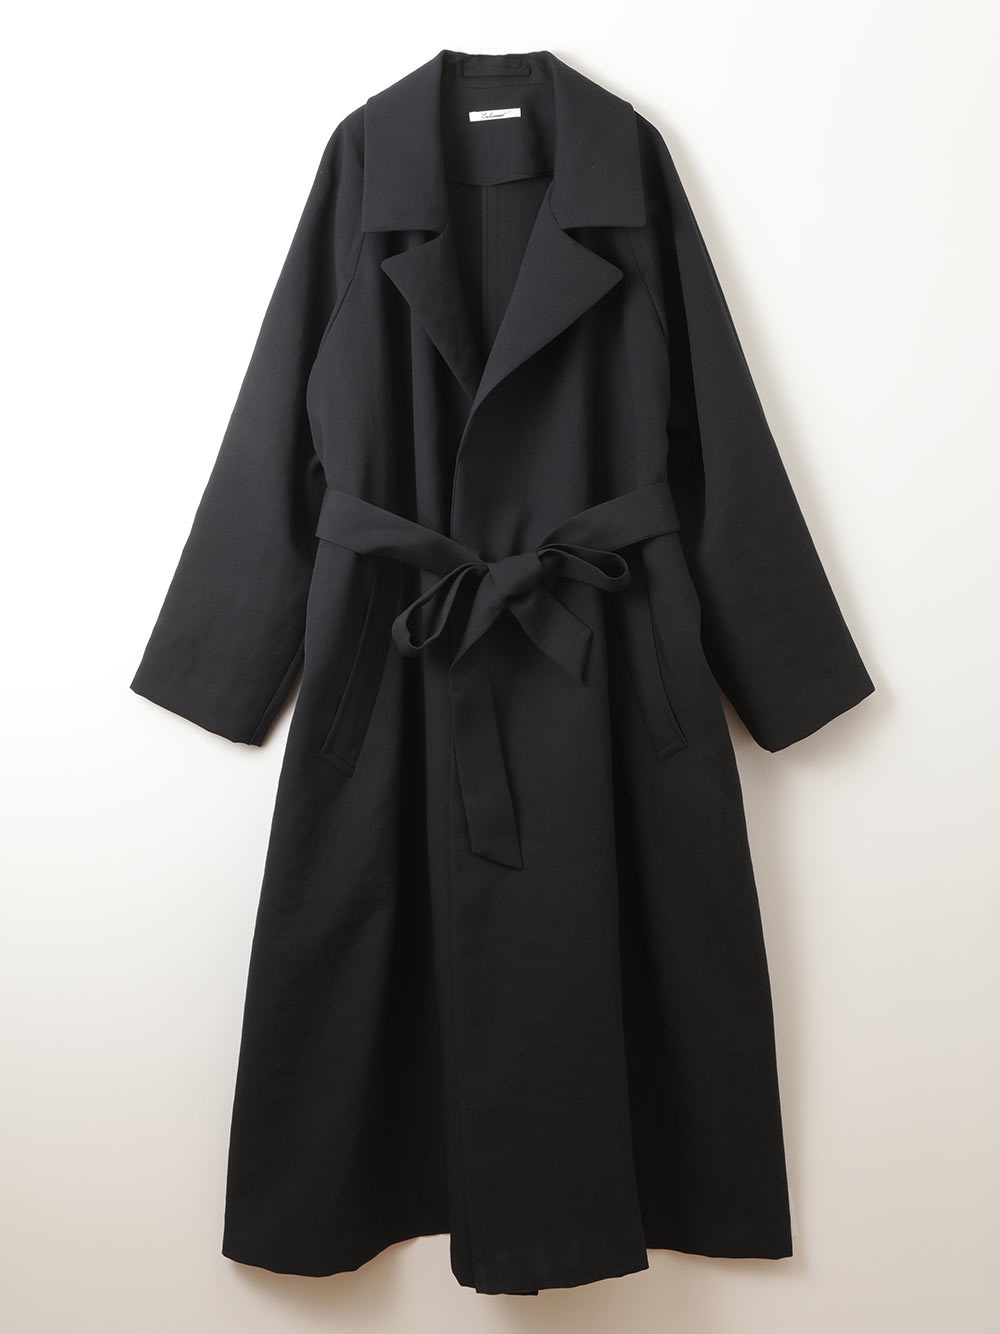 Belted Raglan Coat(70コン-フリー)